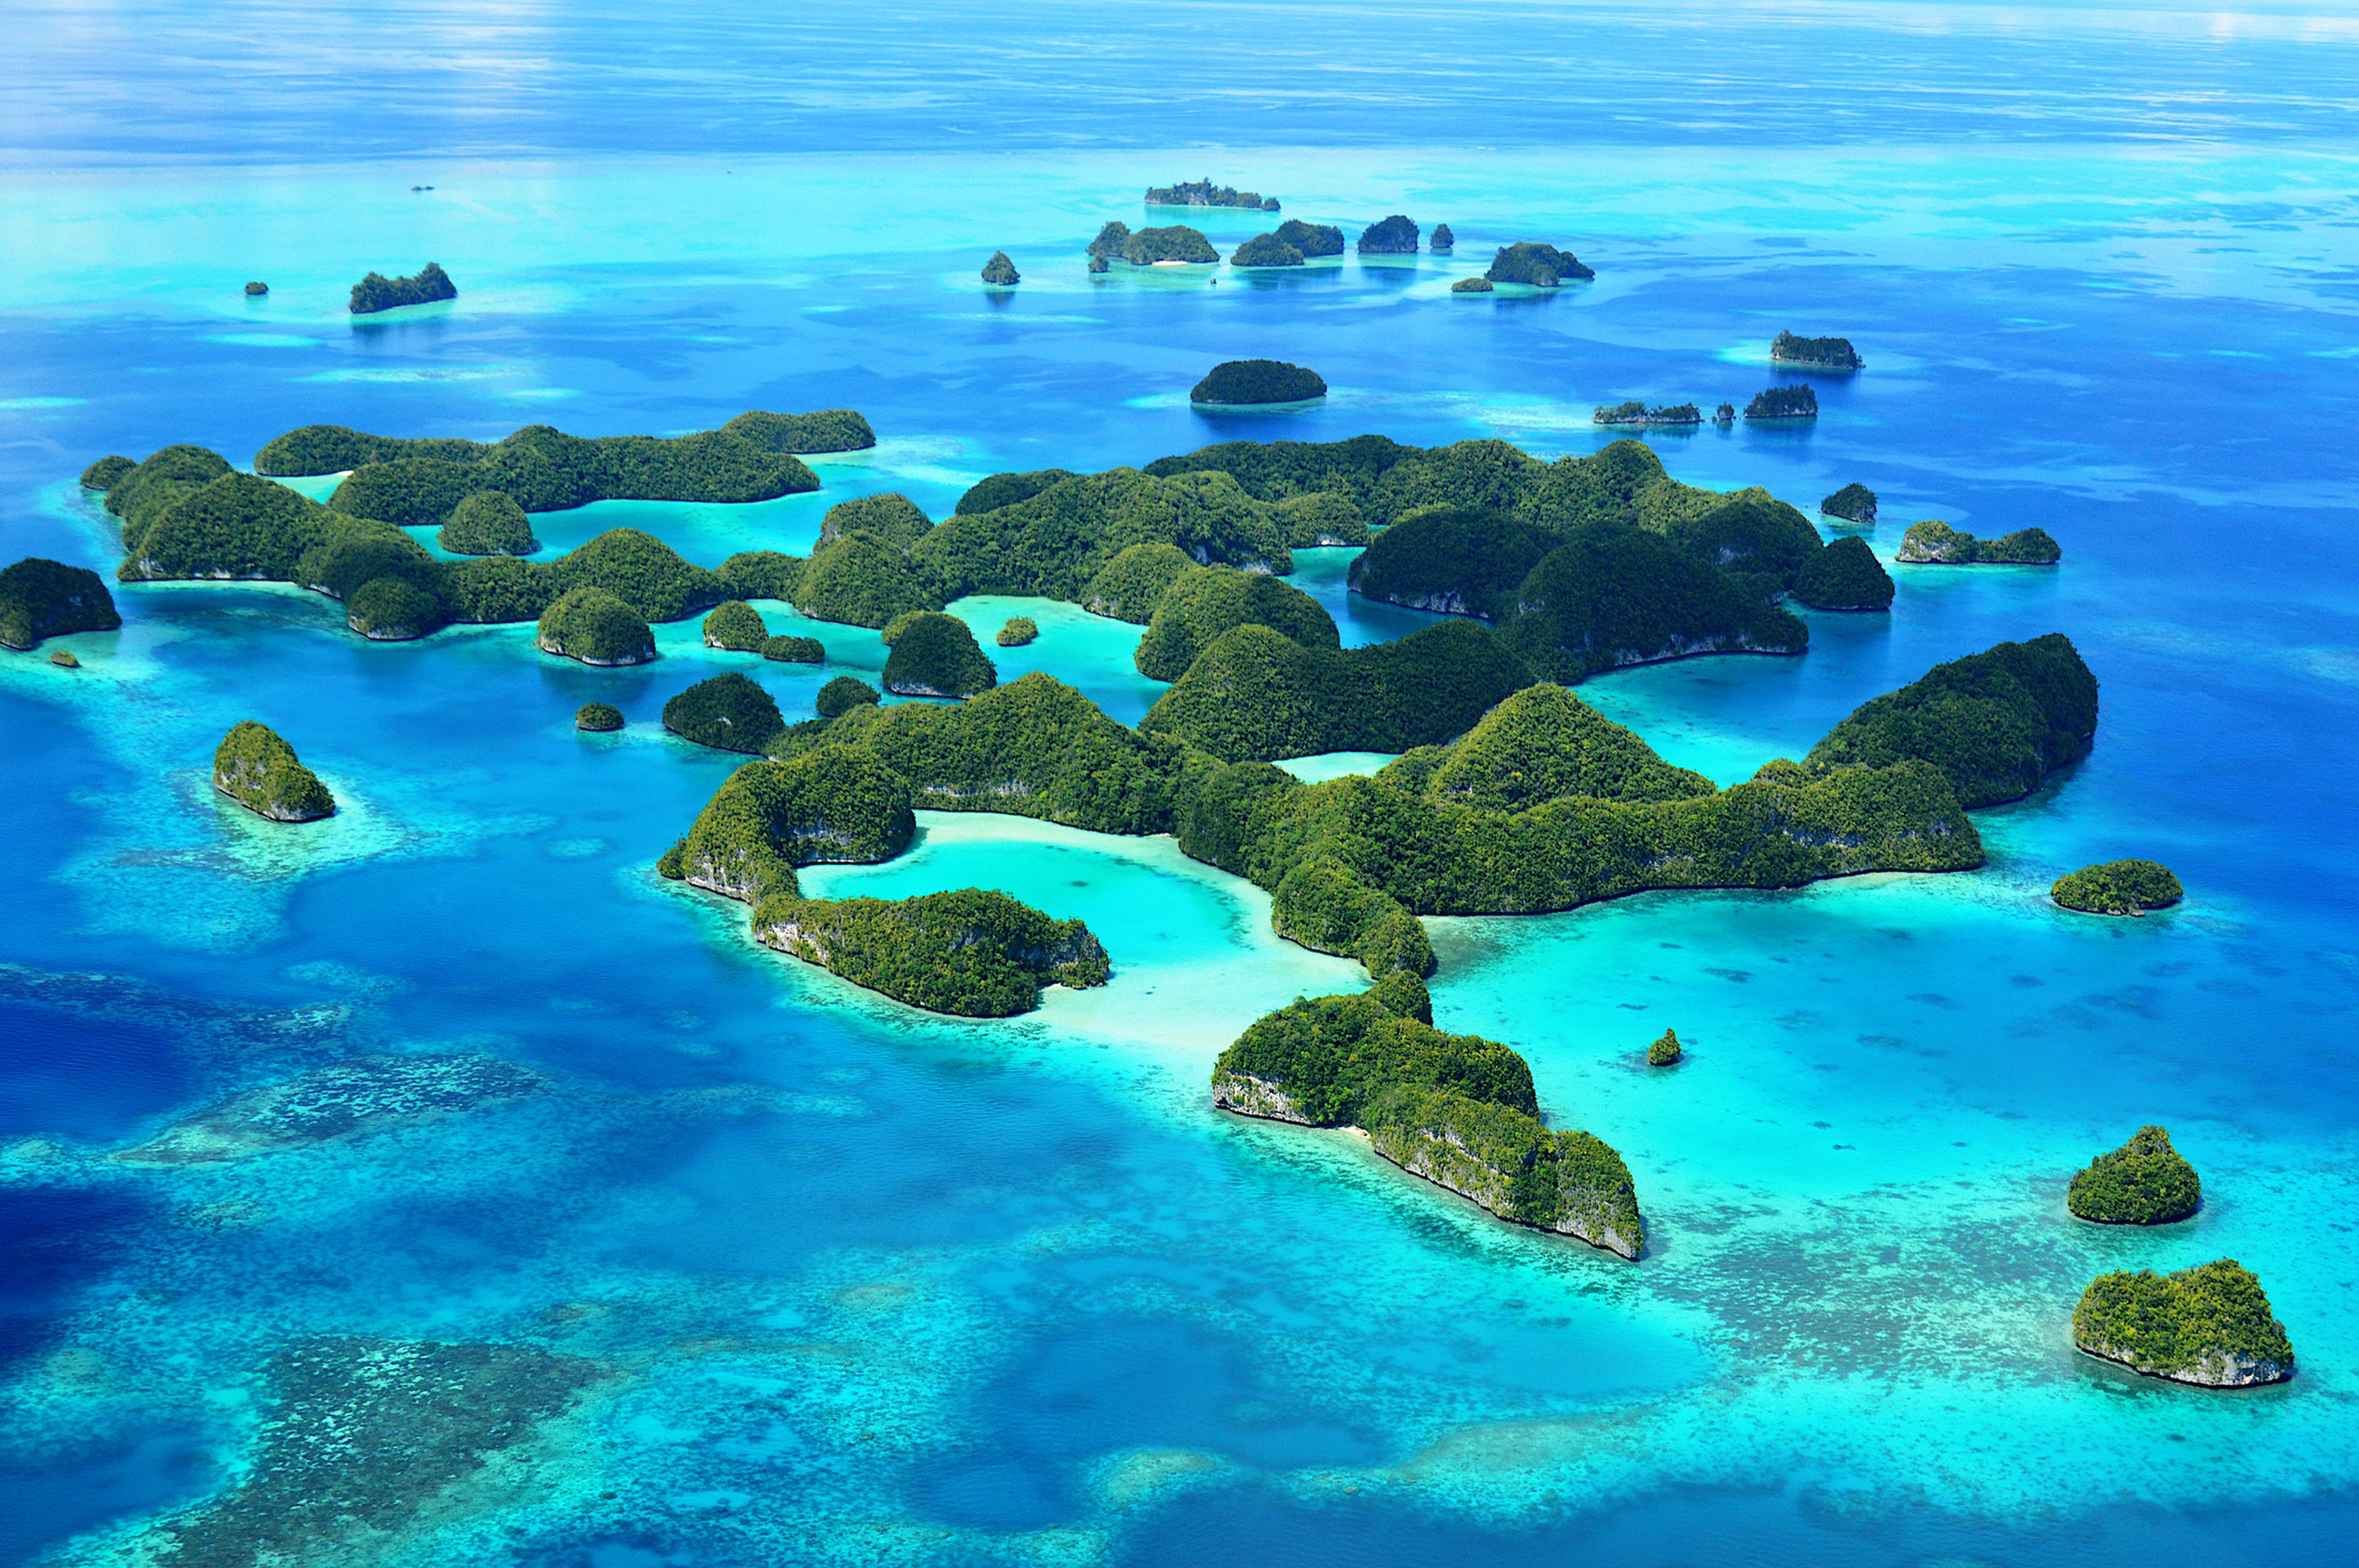 Vista aerea de una las Islas Palaos.